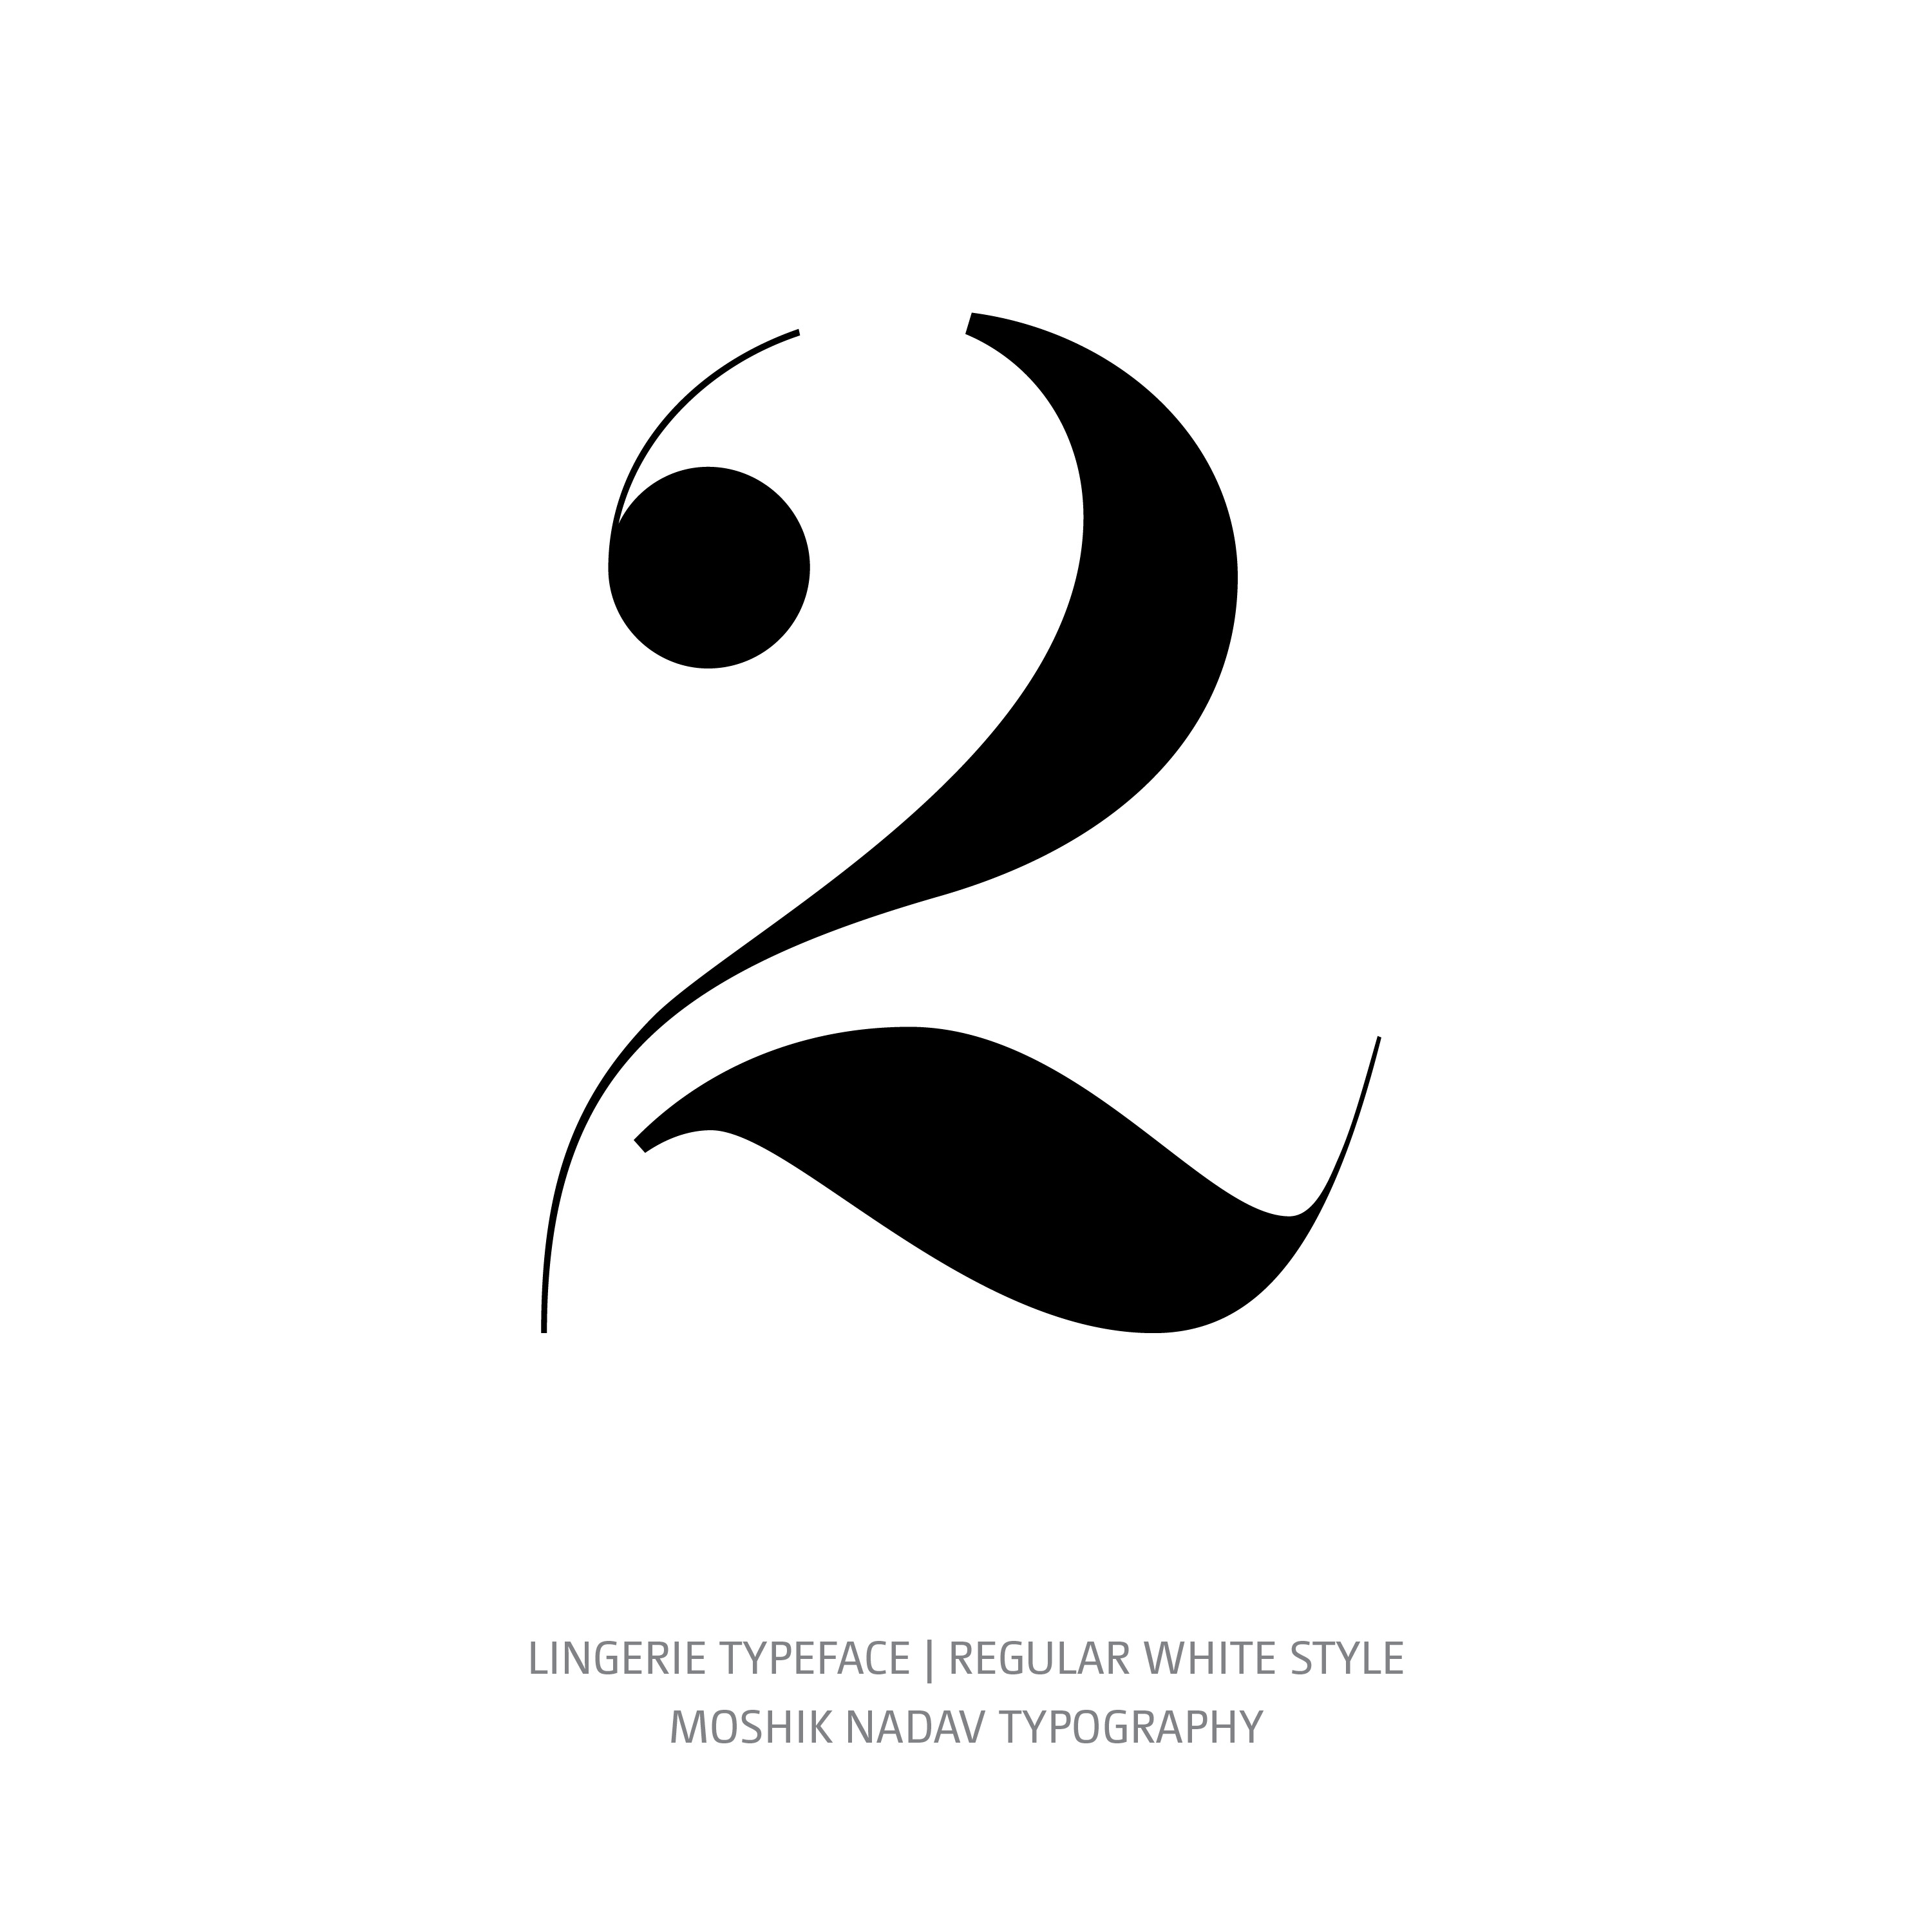 Lingerie Typeface Regular White 2